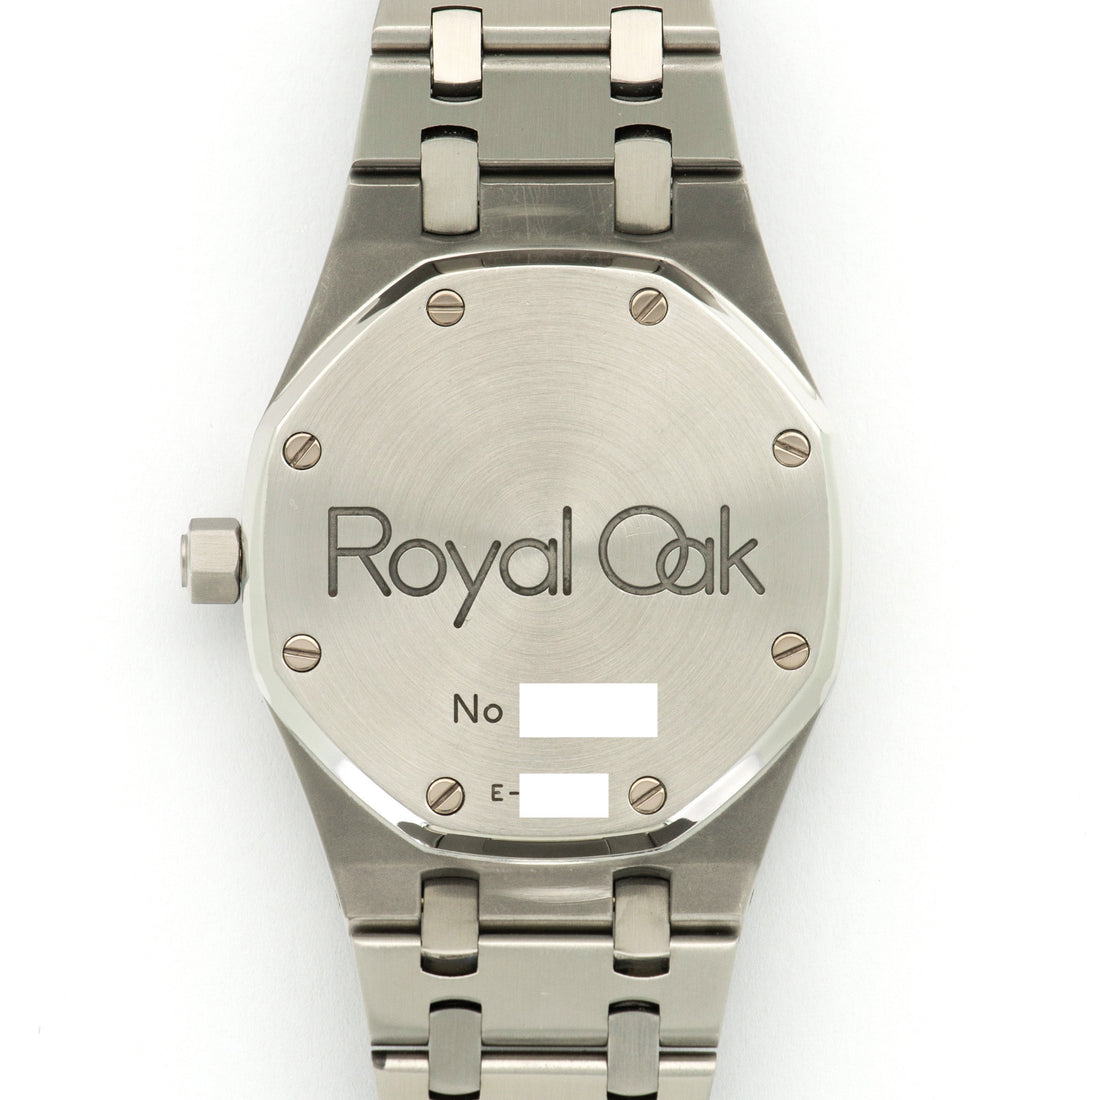 Audemars Piguet Royal Oak Military Dial Watch Ref. 14790